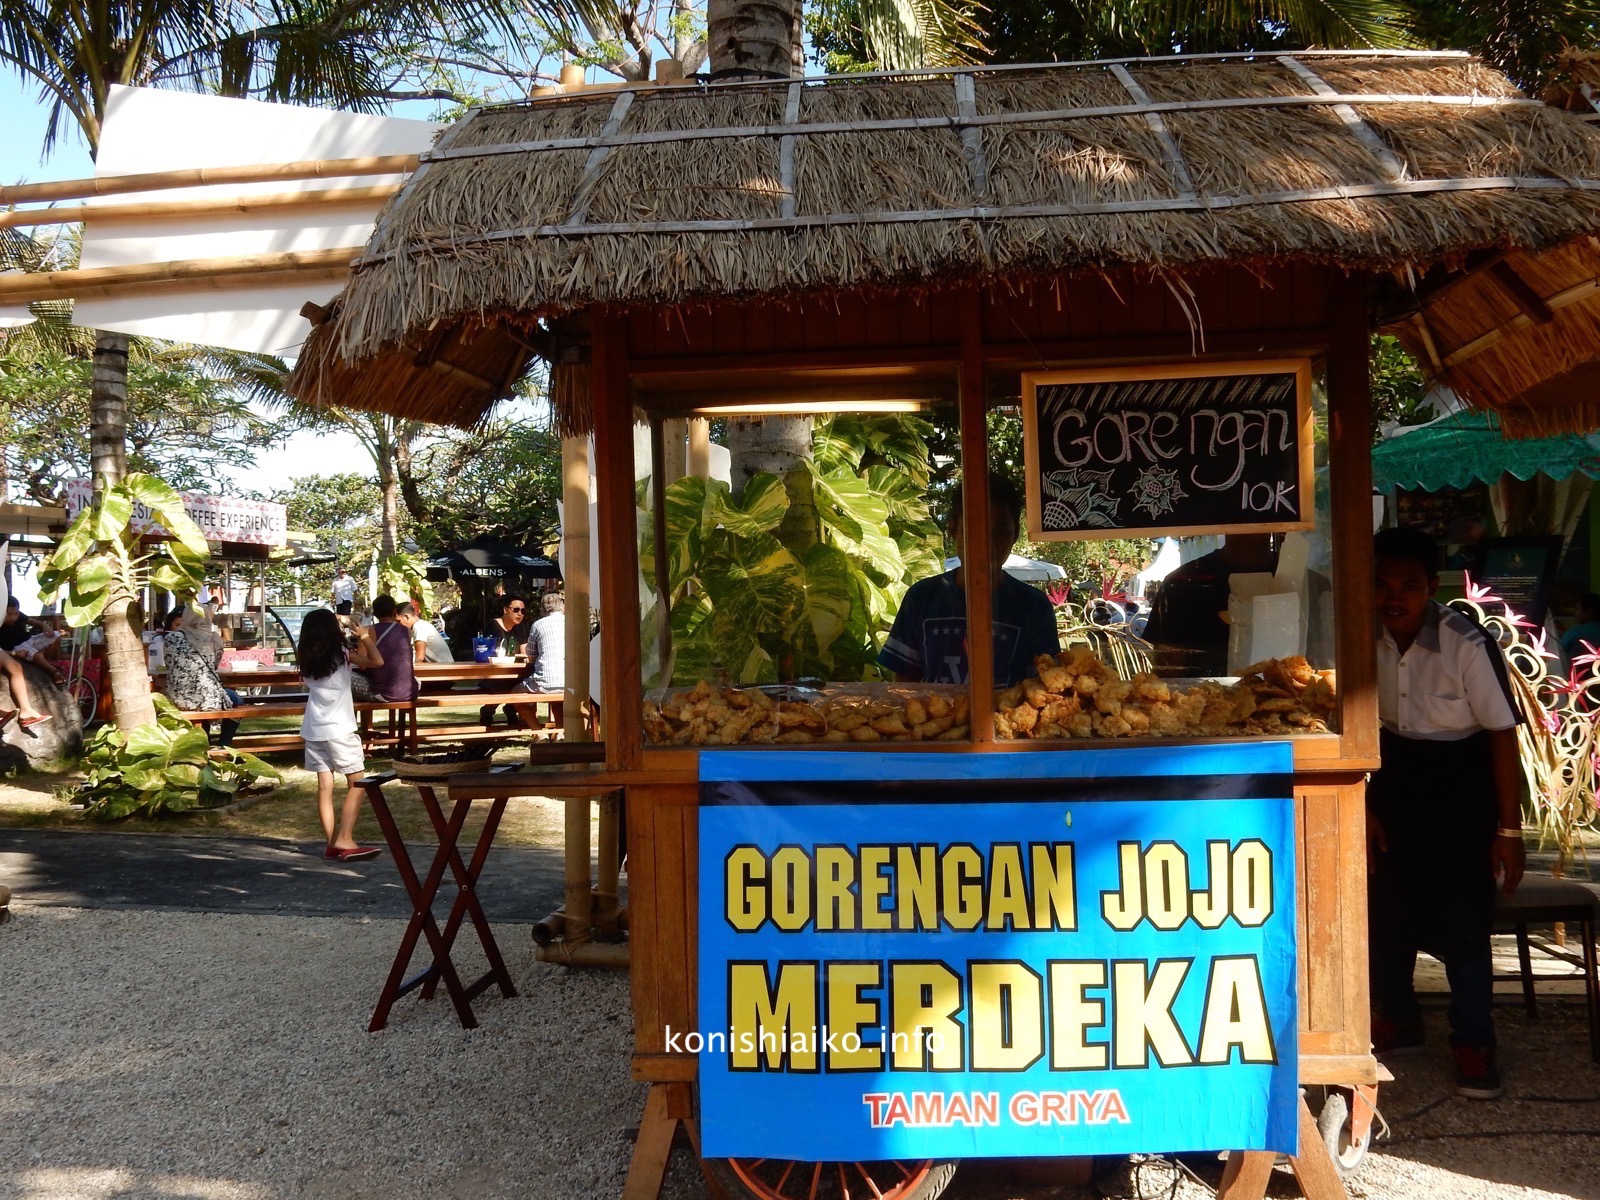 インドネシアの揚げおやつ「ゴレンガン」の屋台